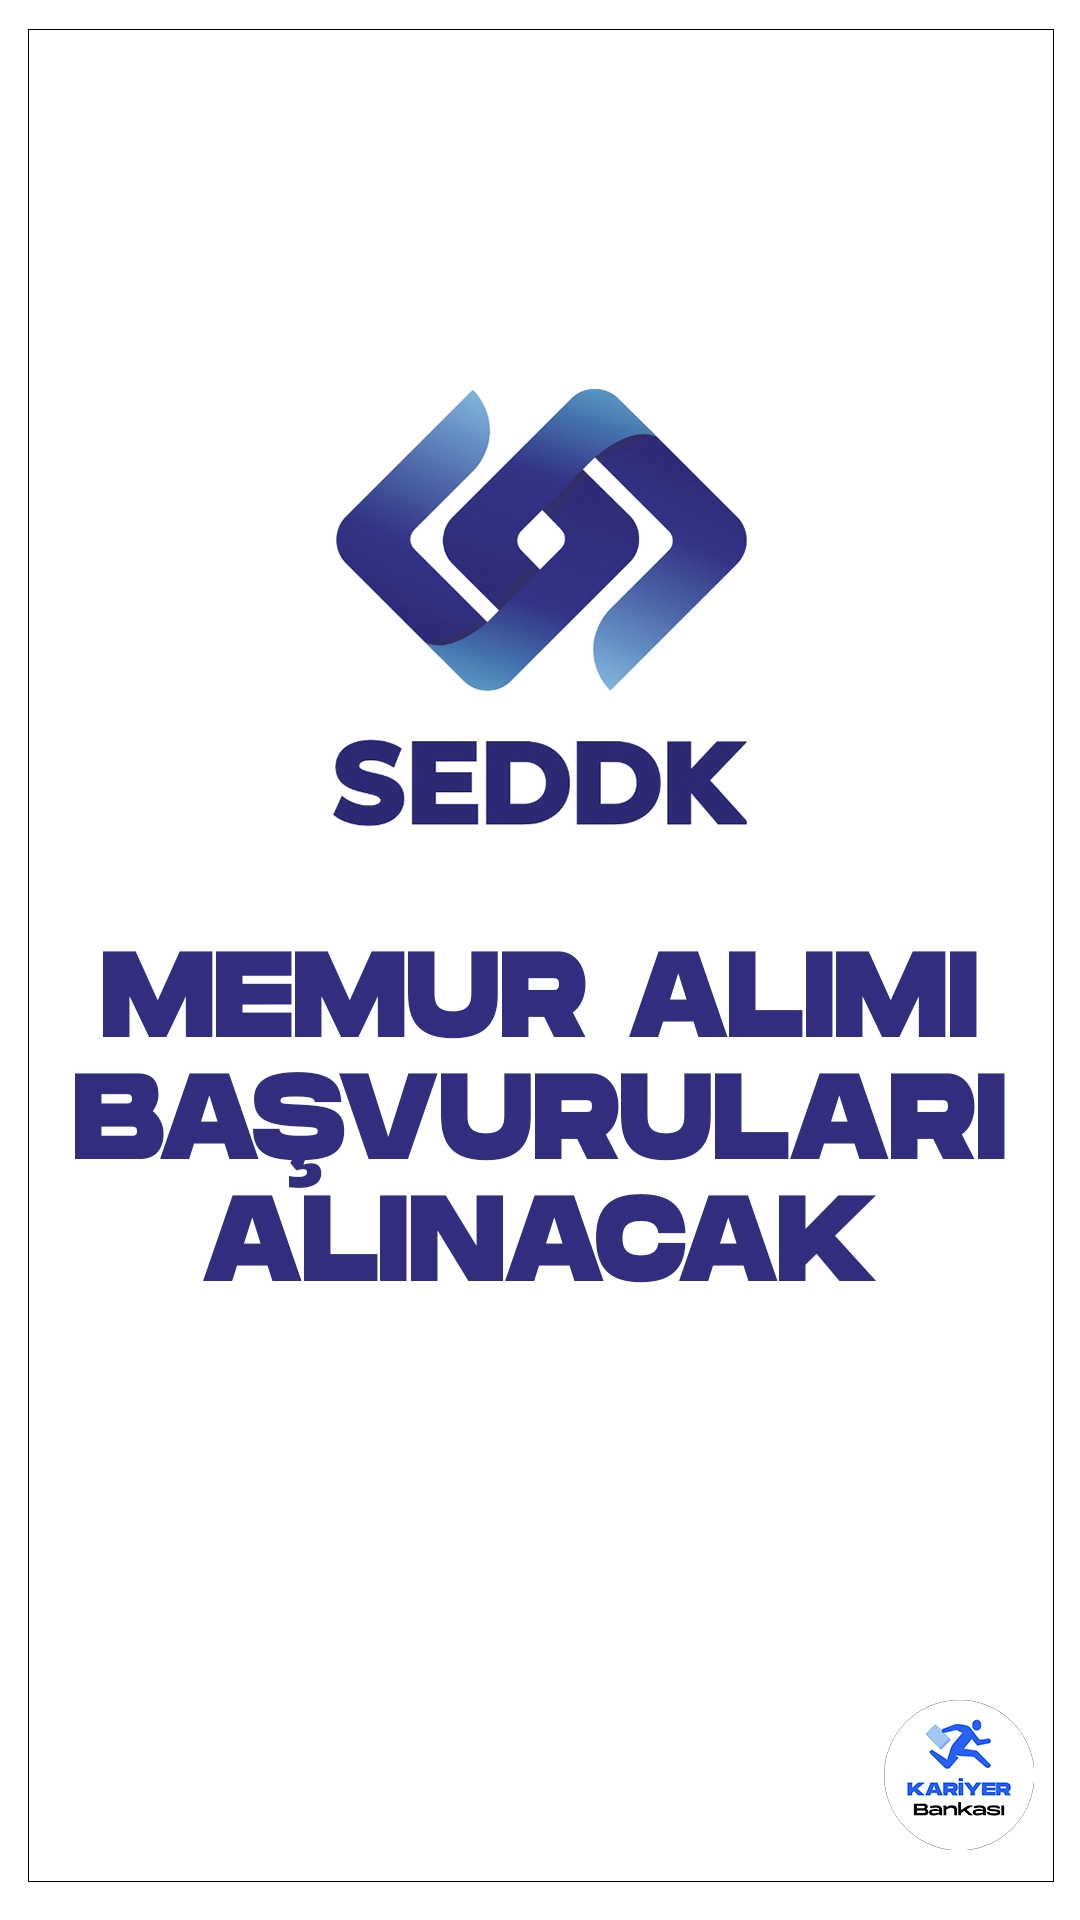 SEDDK 16 Memur Alımı Başvuruları Alınacak. Başvuru şartları ve başvuru sayfasına dair detaylar bu haberimizde.